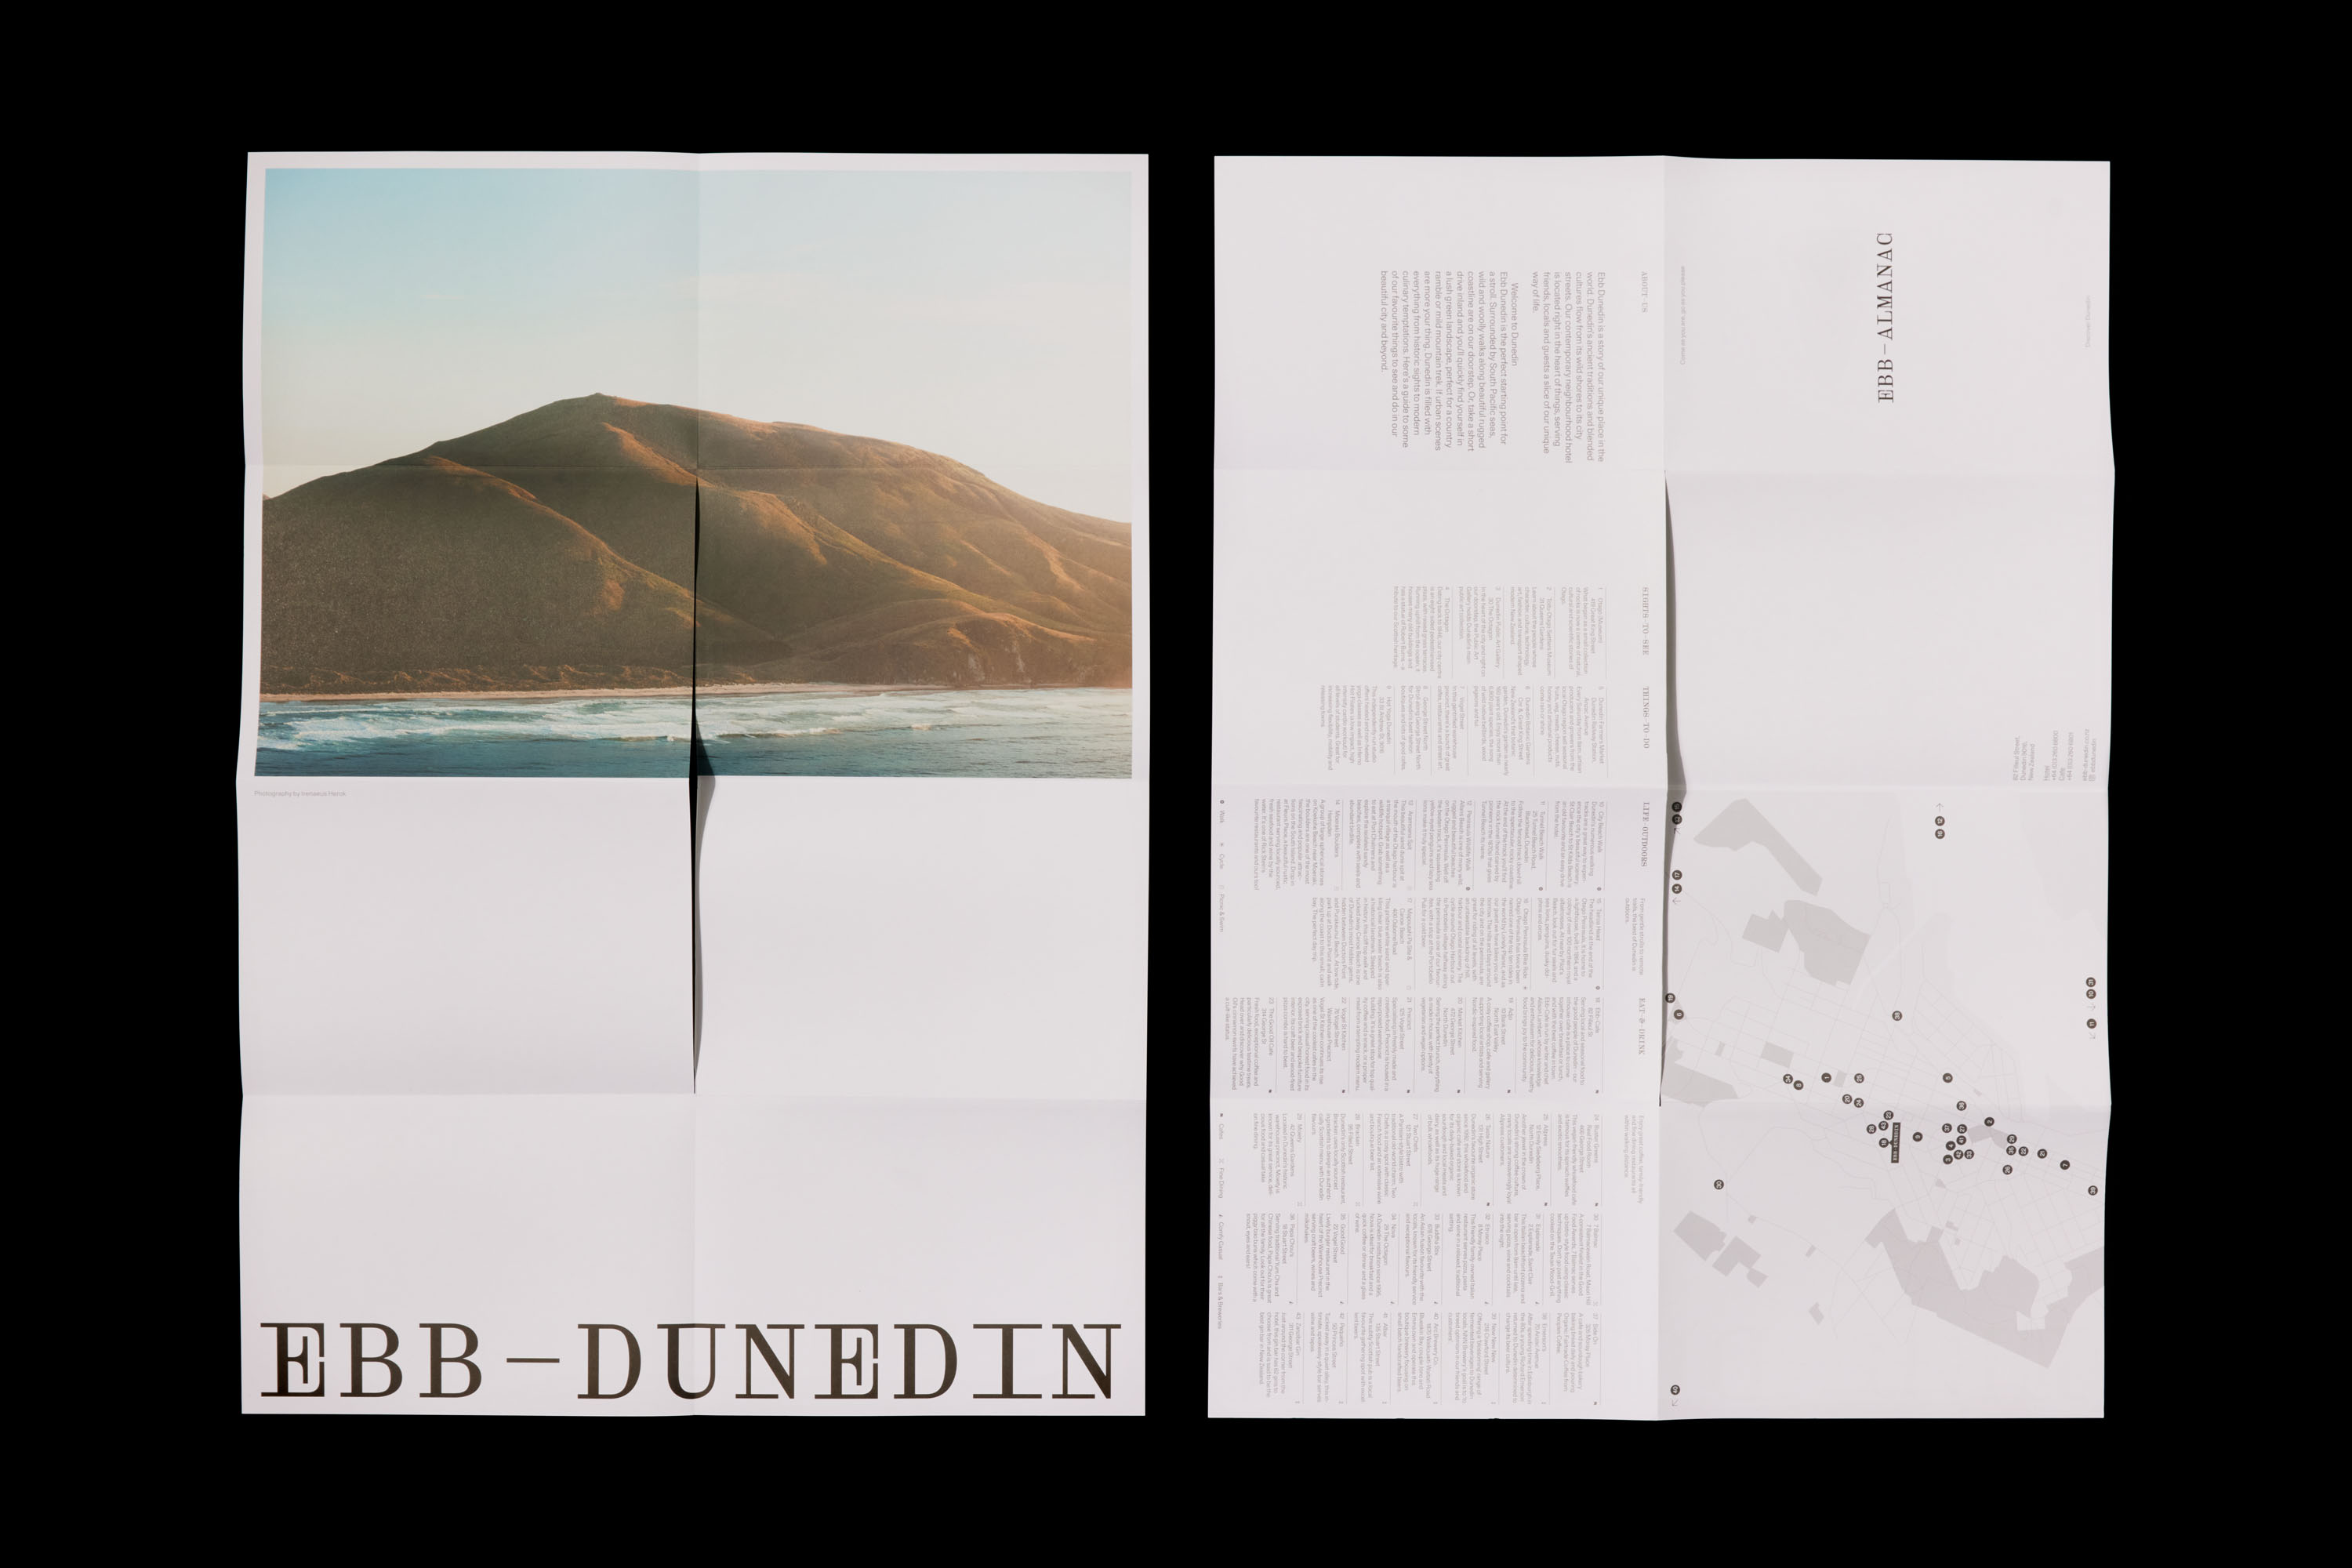 Identitas merek yang dirancang oleh Maud untuk hotel kontemporer Selandia Baru Ebb Dunedin